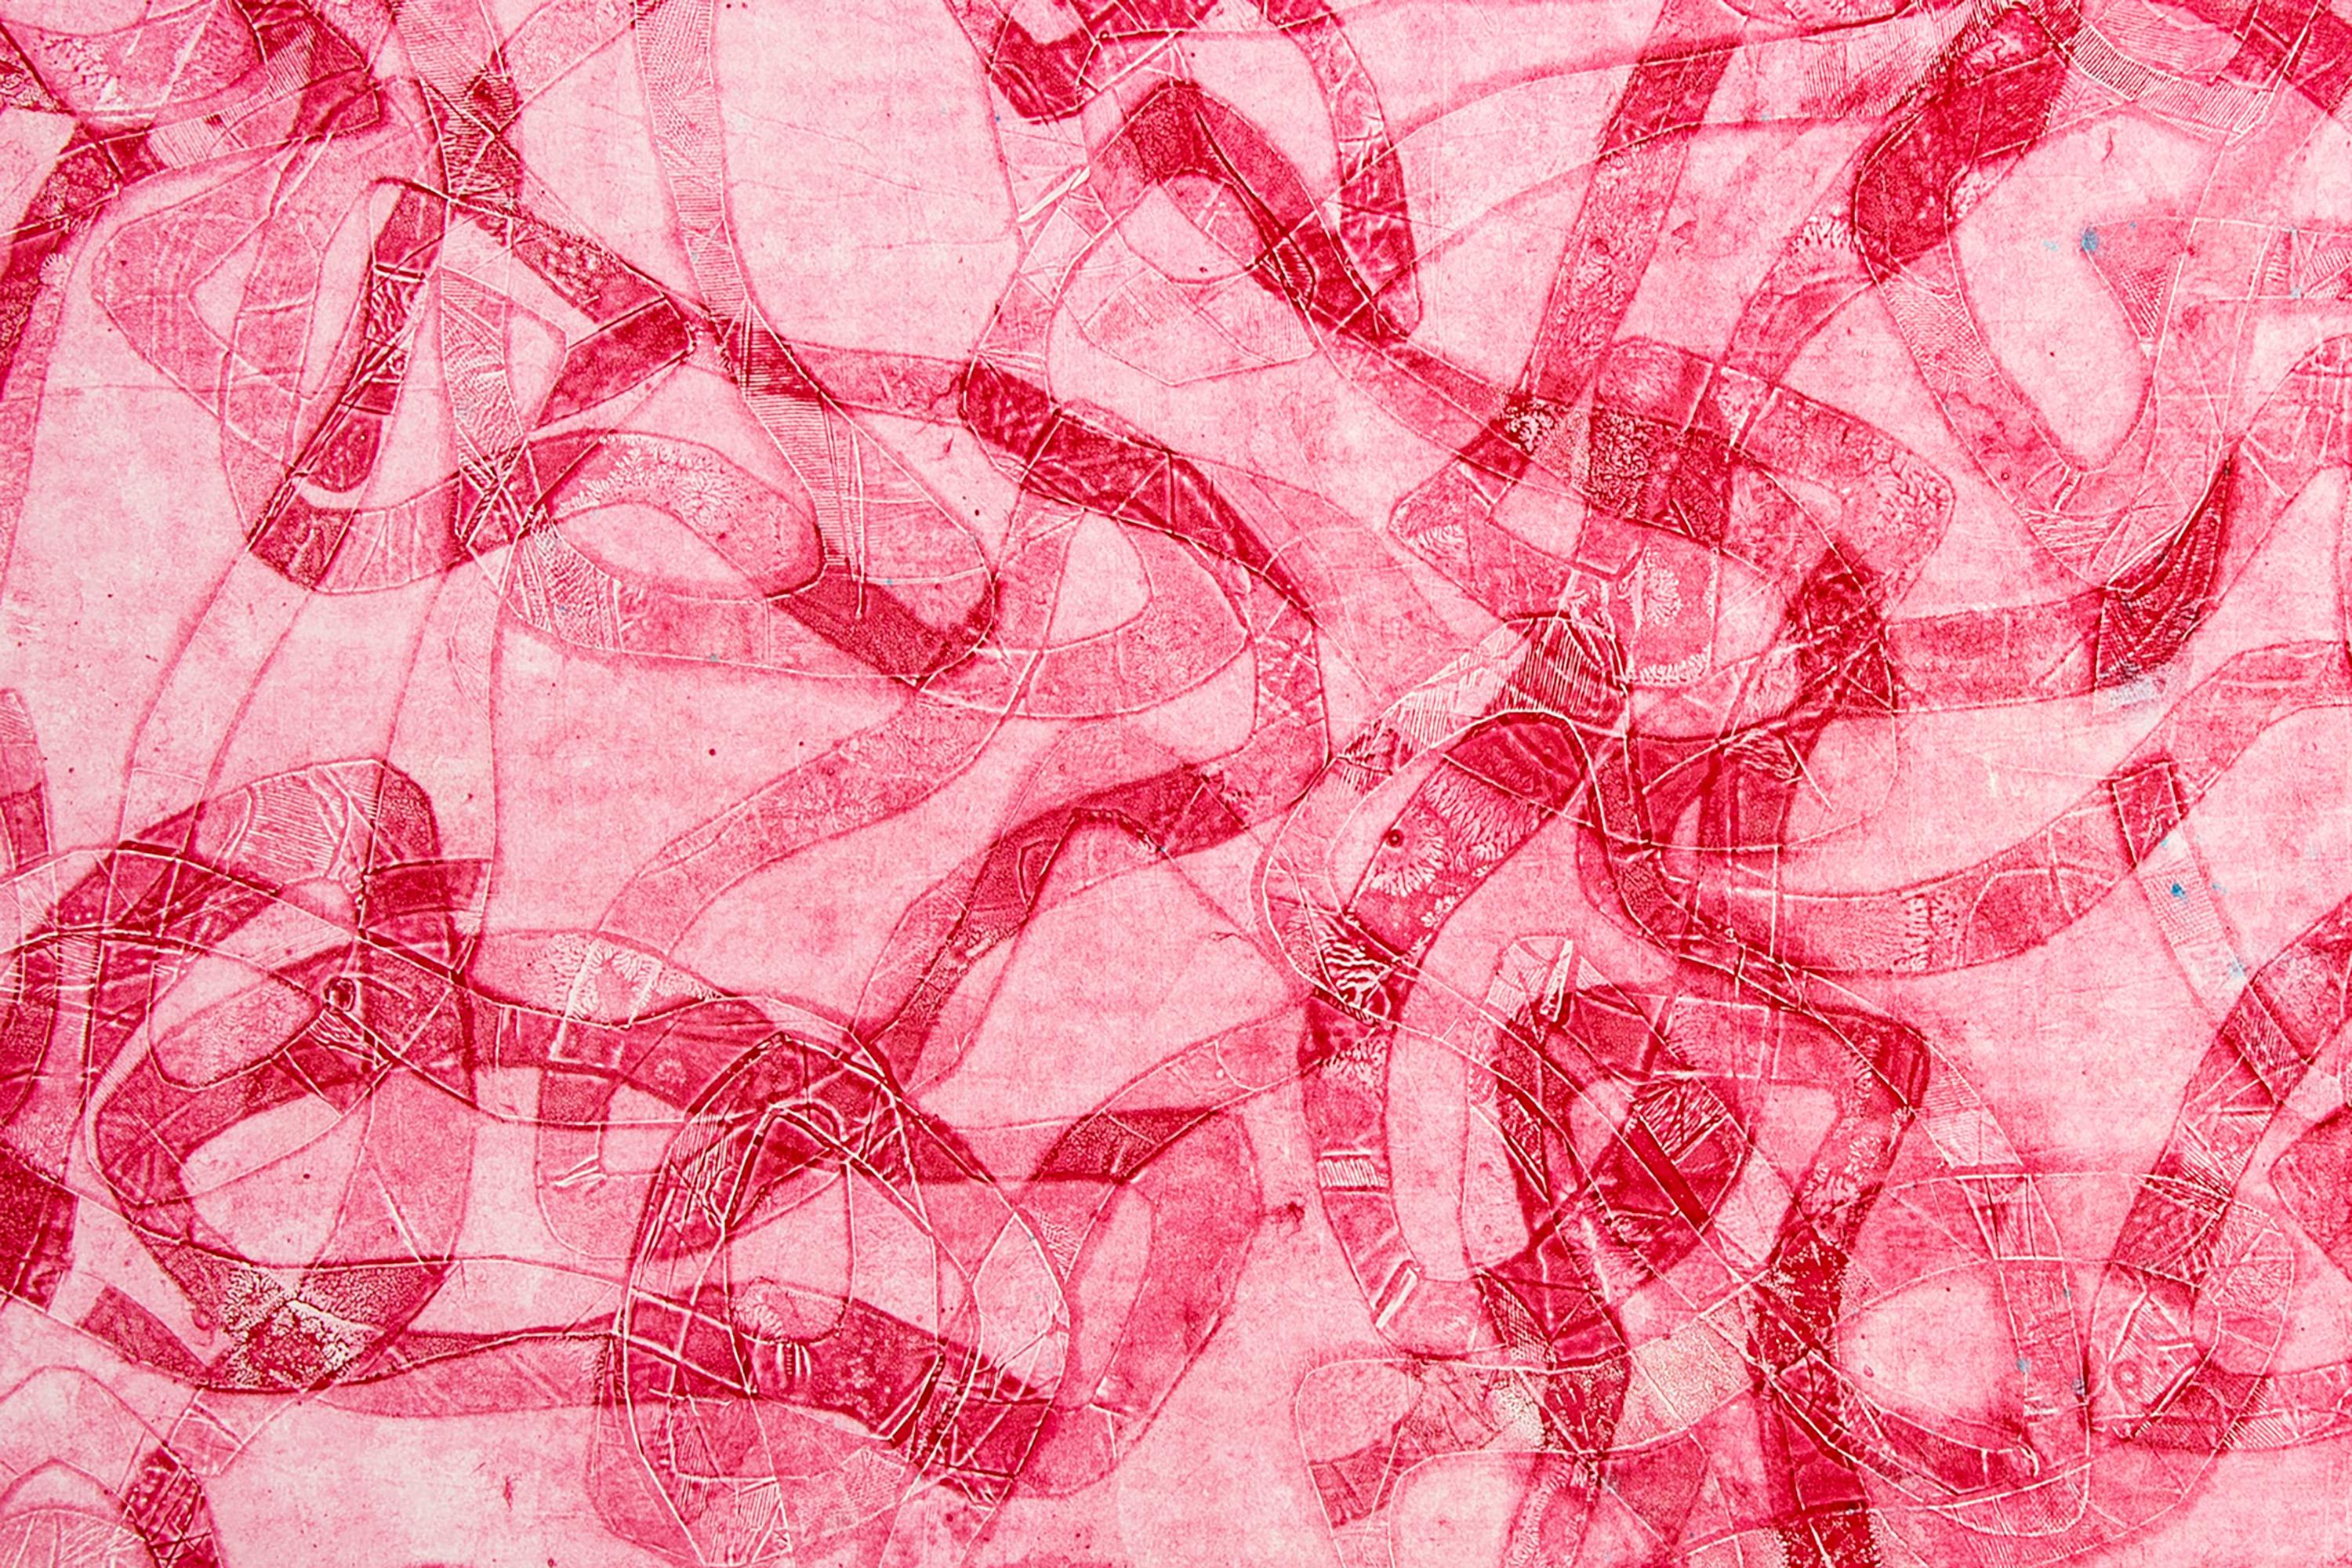 Tonalité rouge, peinture figurative abstraite représentant des poissons des mers rouges sur papier  2